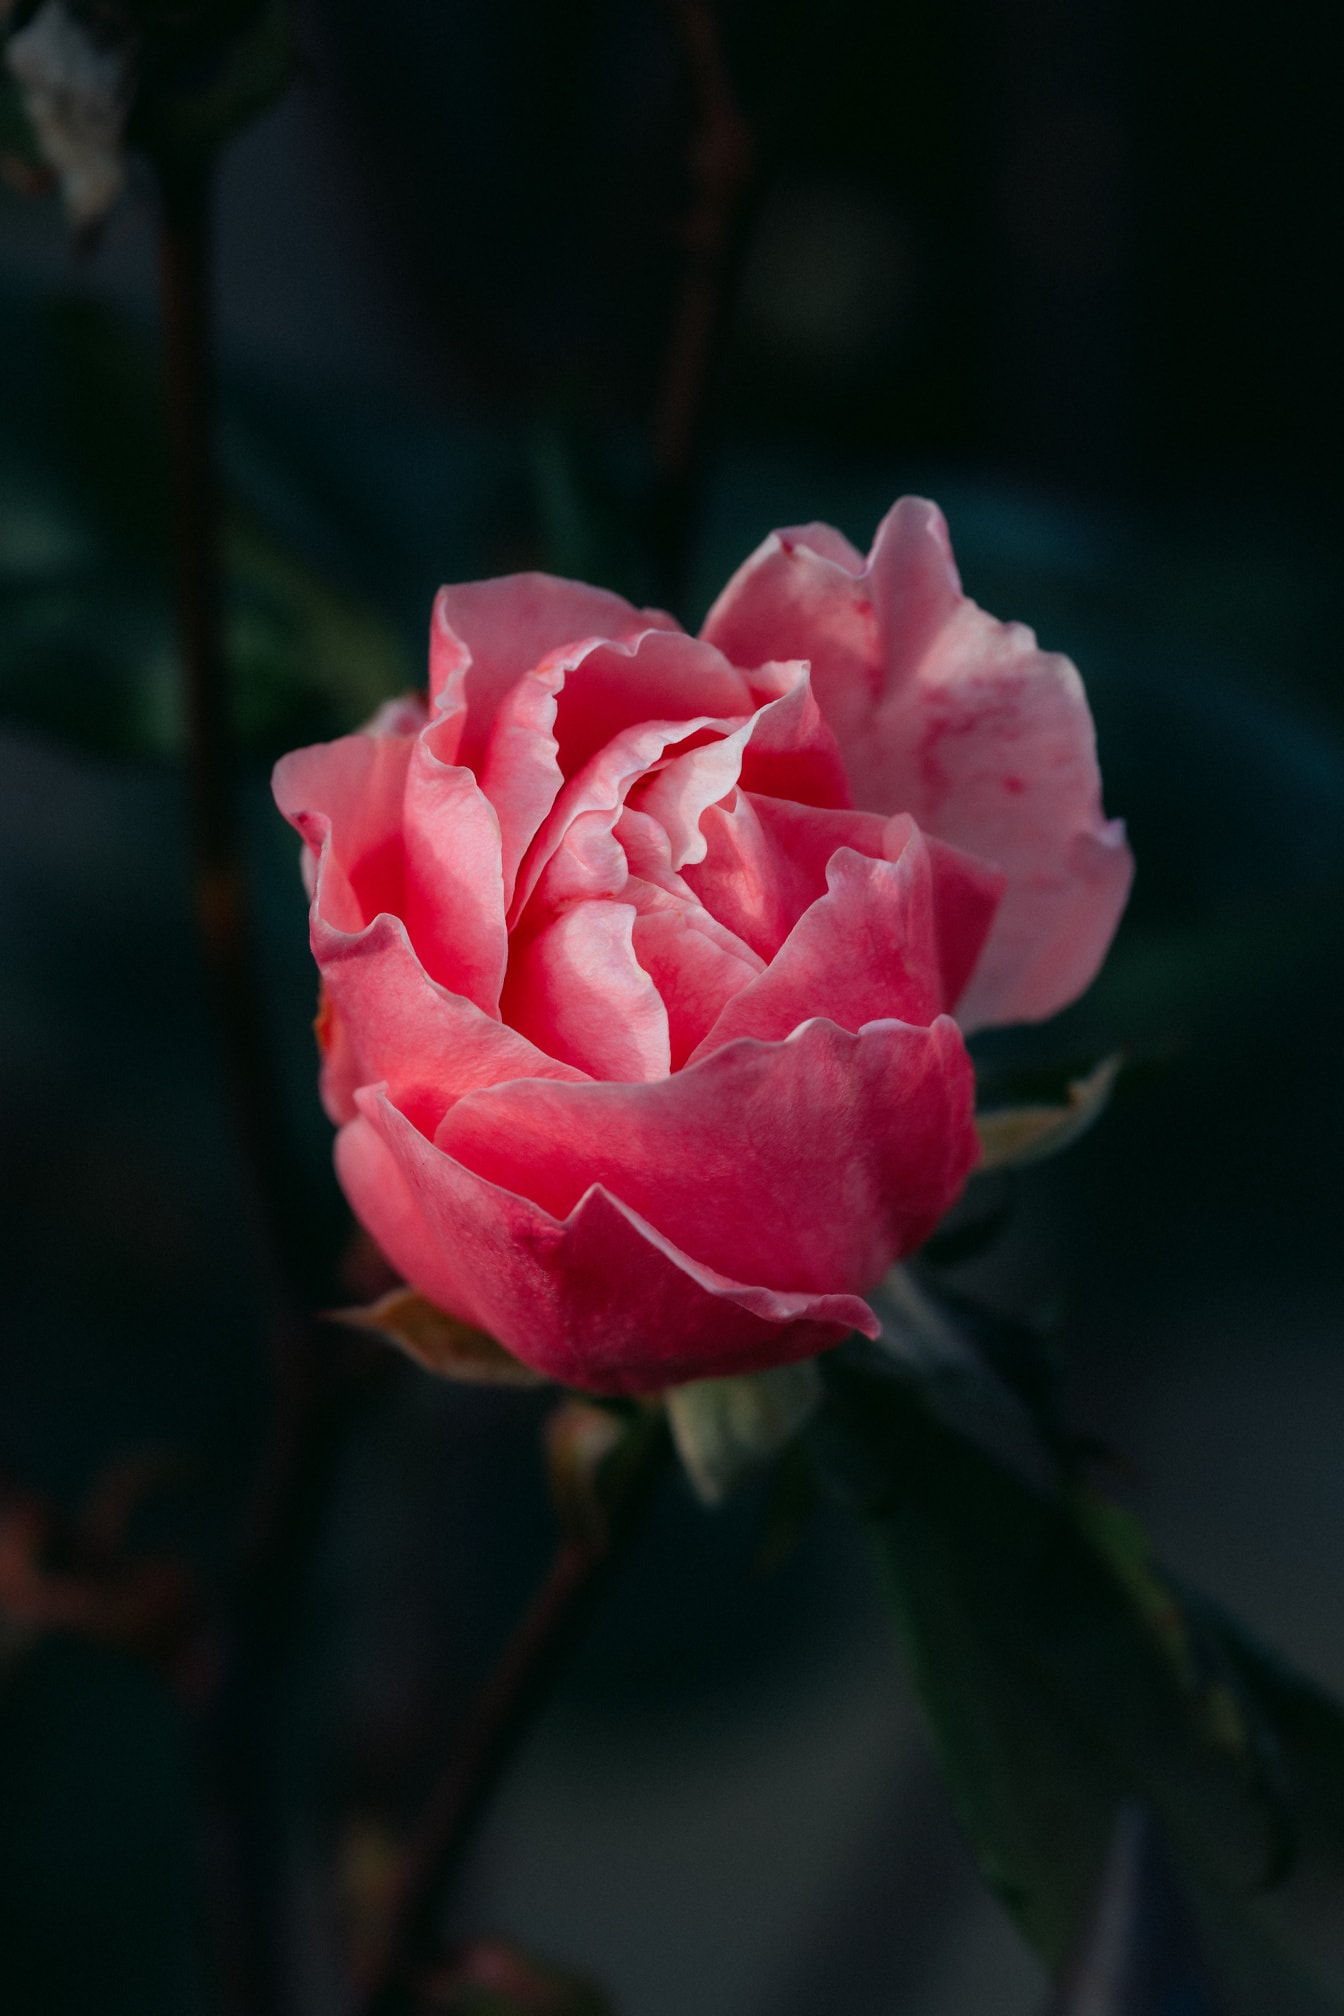 Prekrasan ružičasti cvijet ruže s nježnim laticama